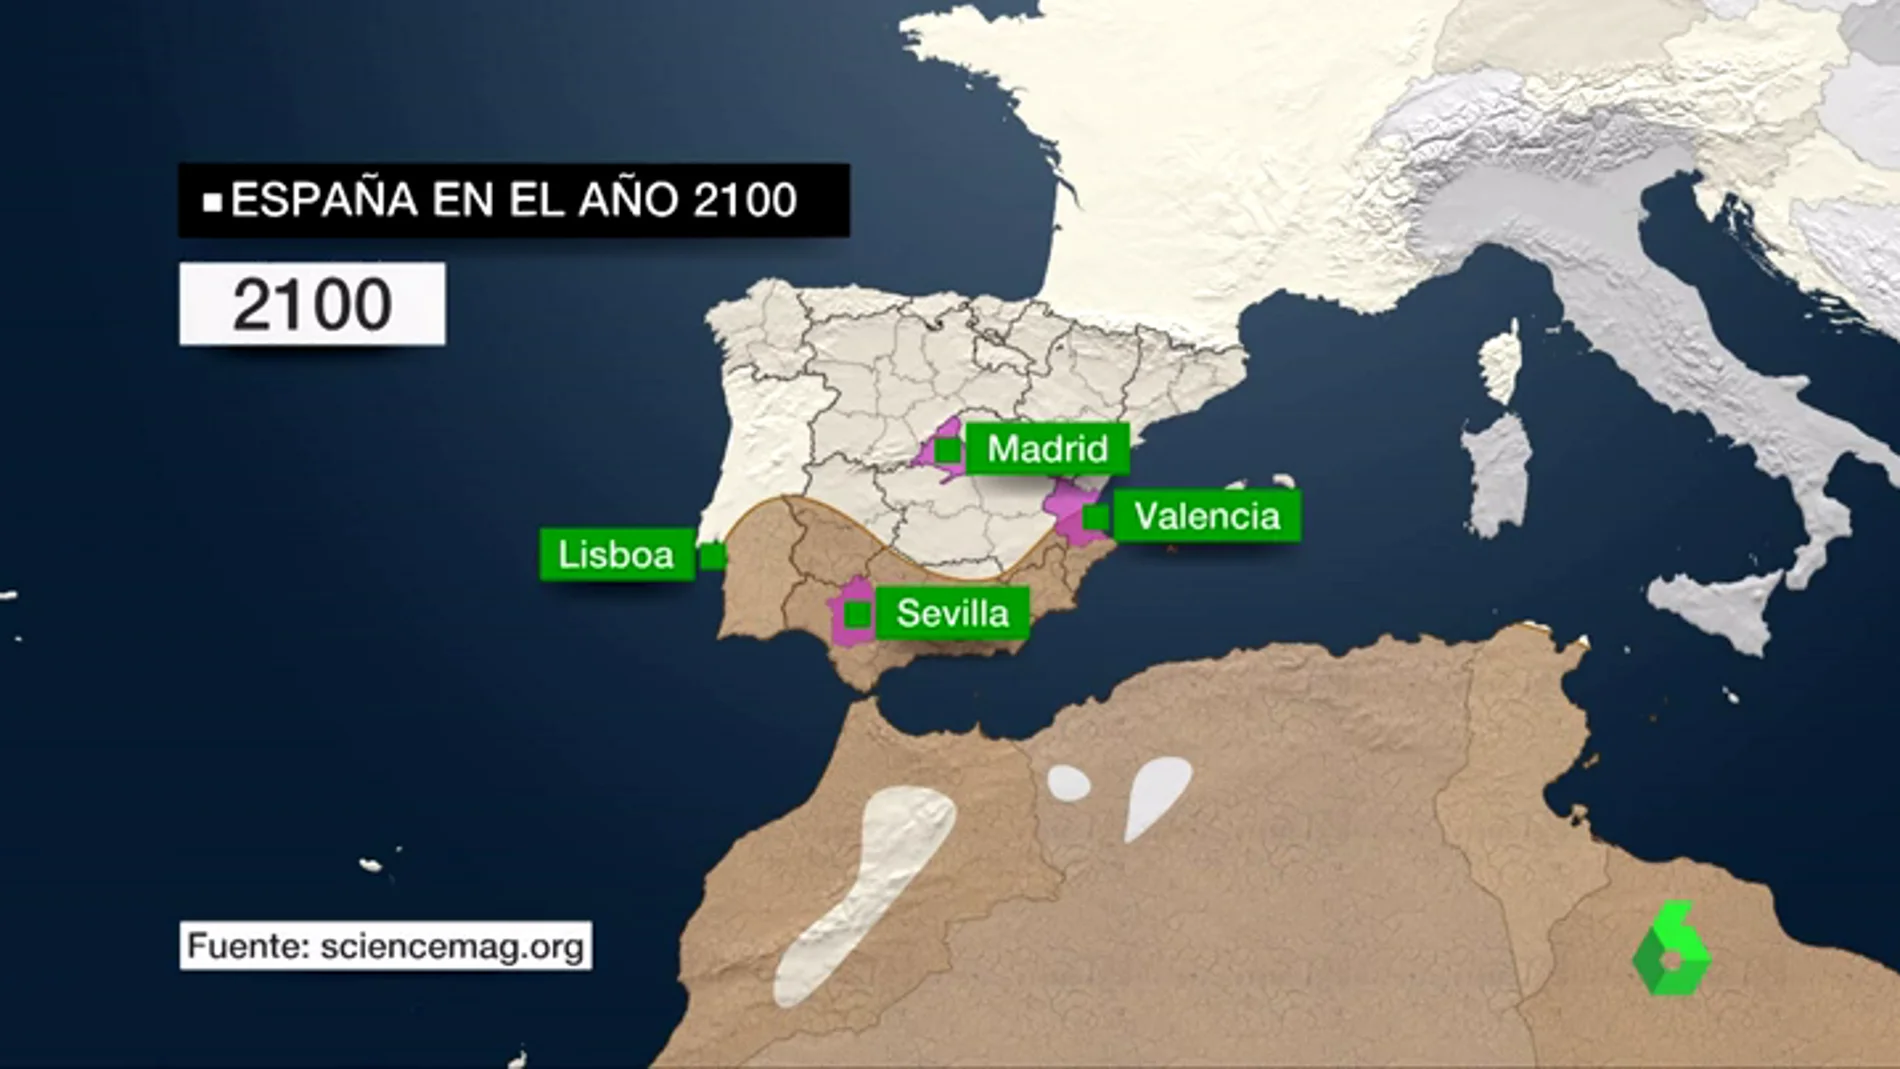 Mapa de España desértica por los efectos del cambio climático